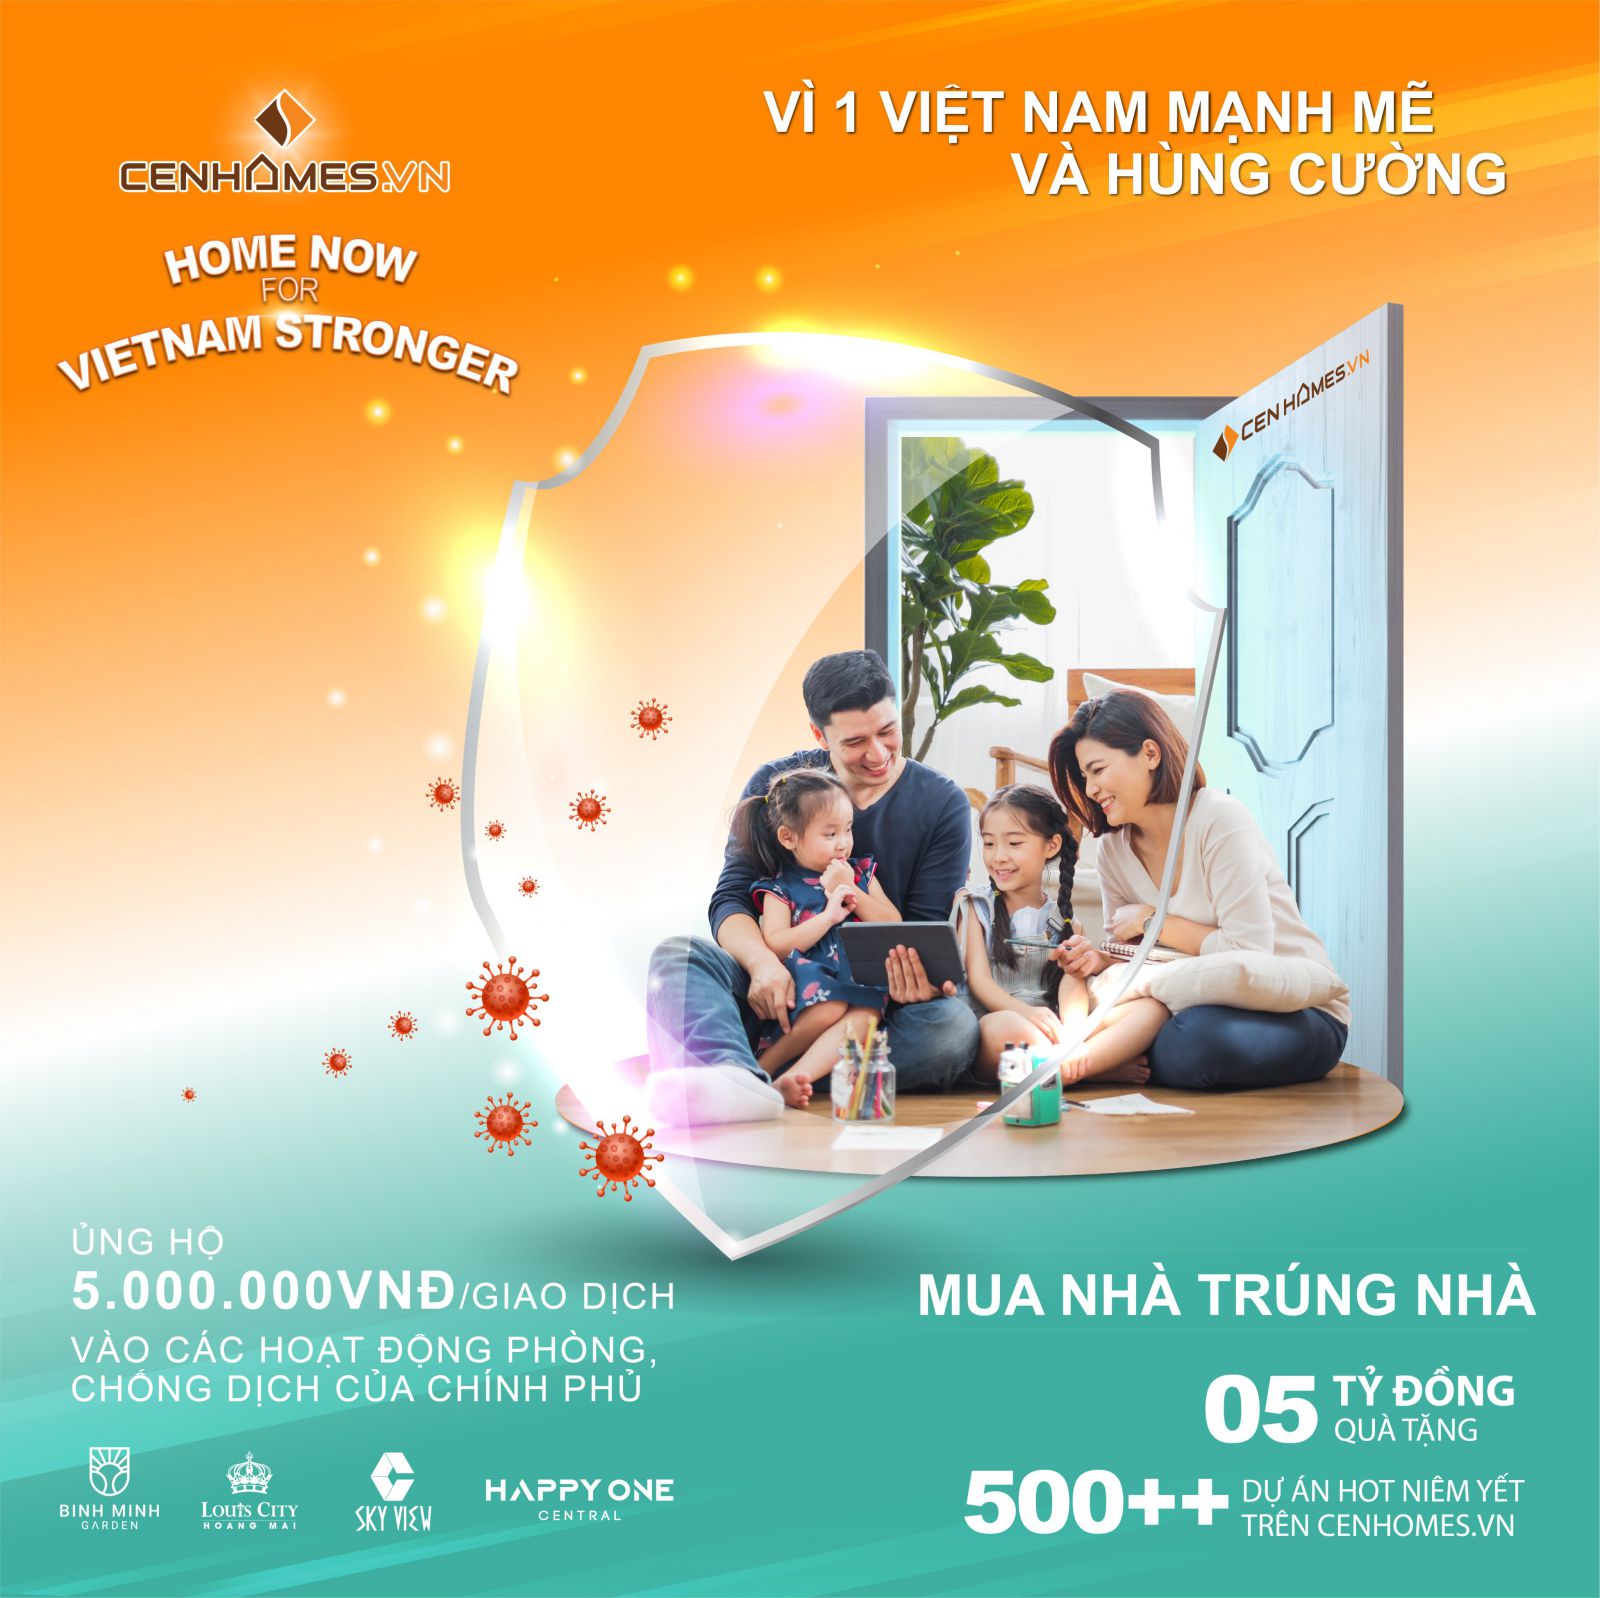 Chiến dịch “Home now for Vietnam stronger” kêu gọi khách hàng ở nhà và thúc đẩy thị trường Bấtp/động sản phát triển trên nền tảng Cenhomes.vn.